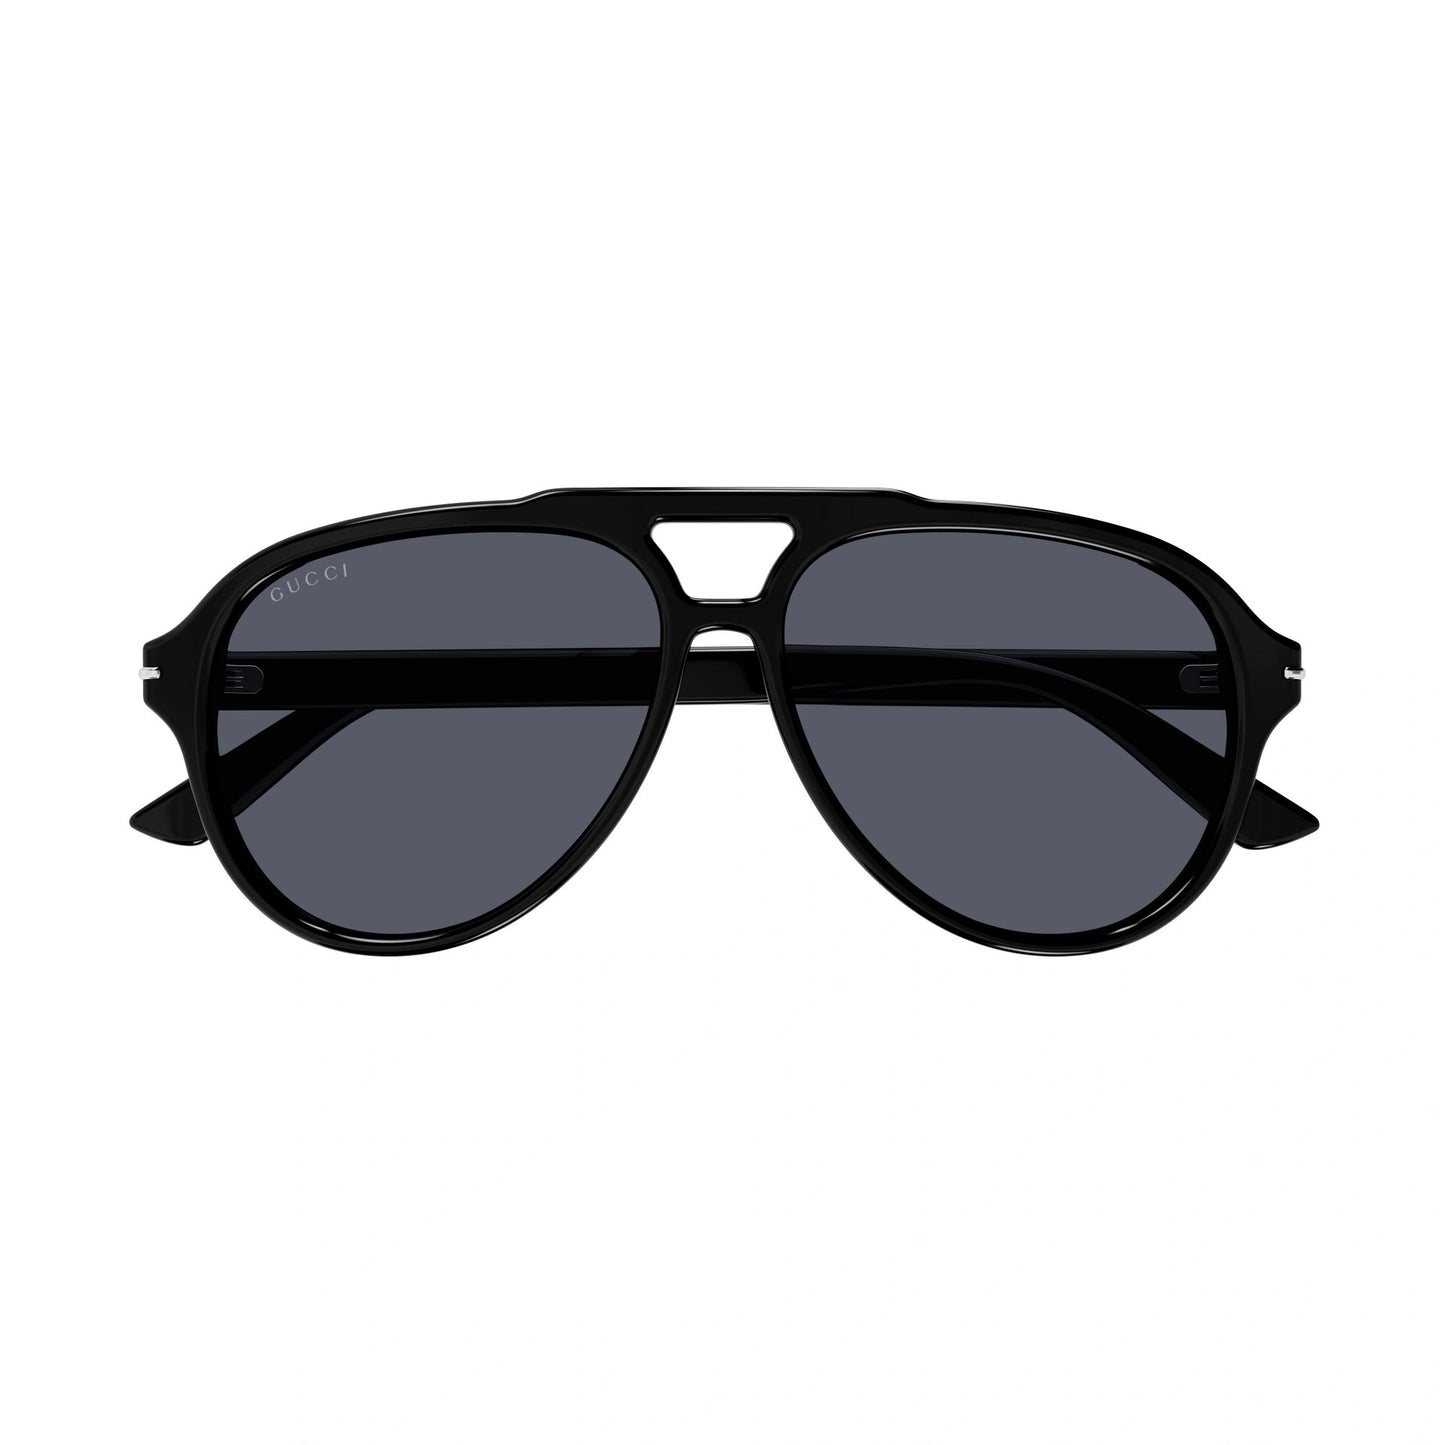 Gucci GG1443S-001 58mm New Sunglasses